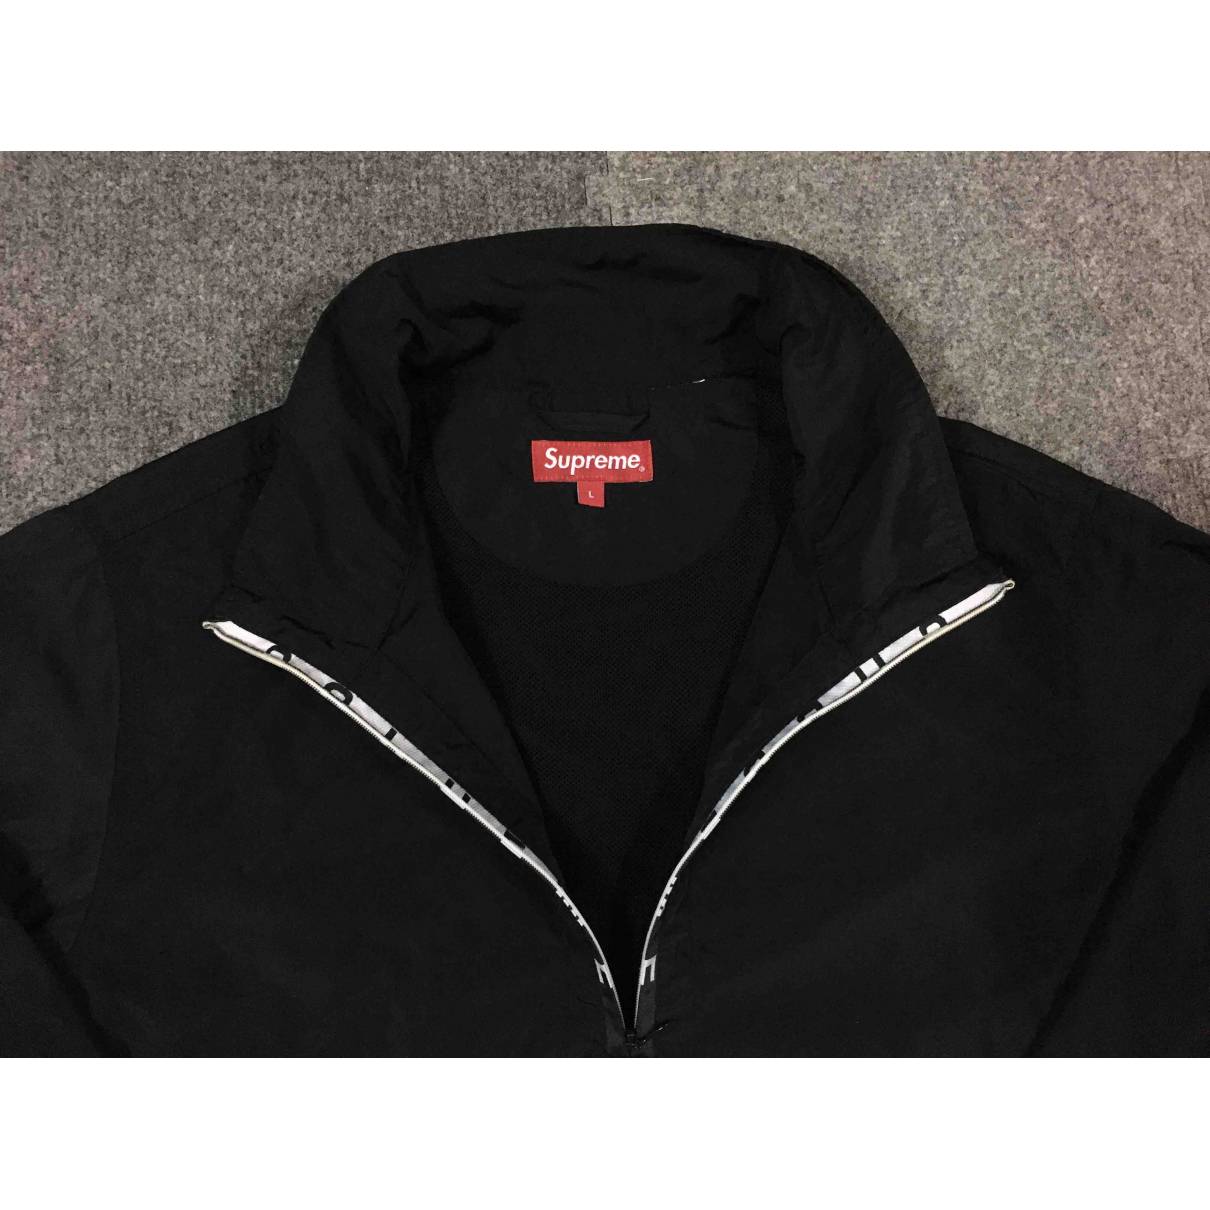 supreme jacket black